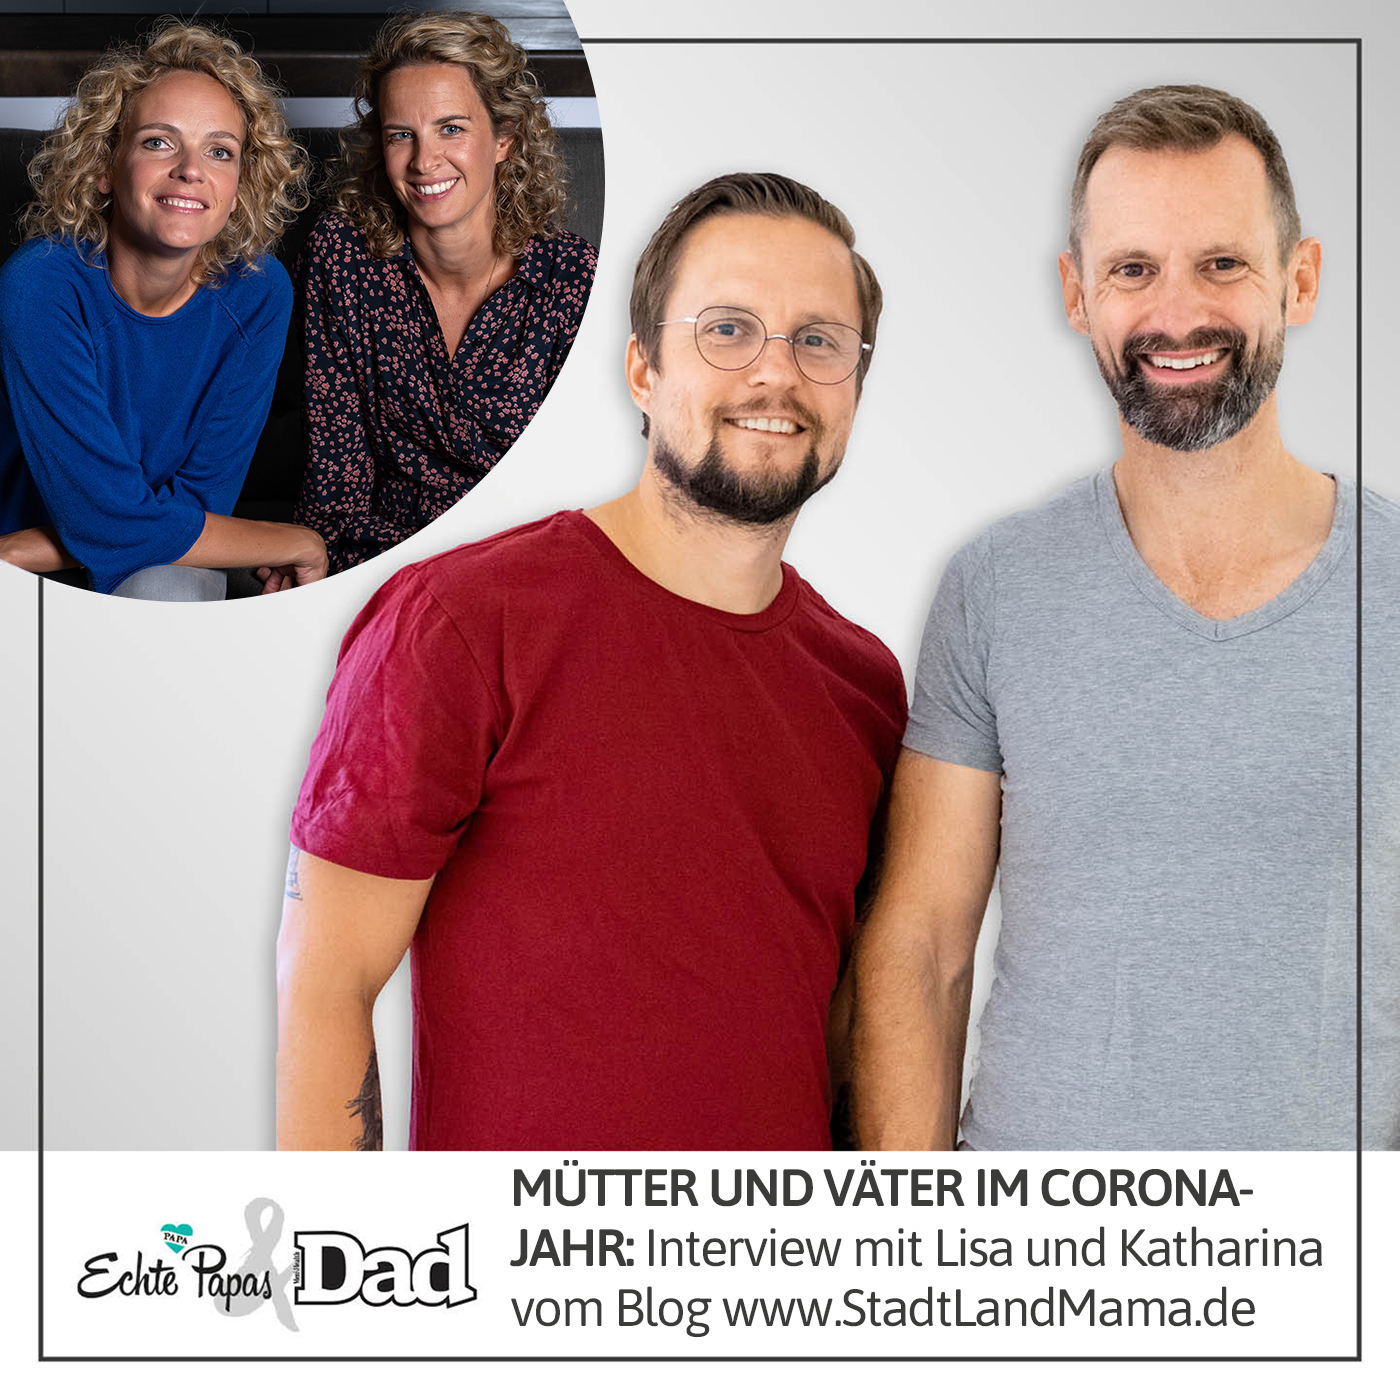 Mütter und Väter im Corona-Jahr: Interview mit Lisa und Katharina von Blog www.StadtLandMama.de